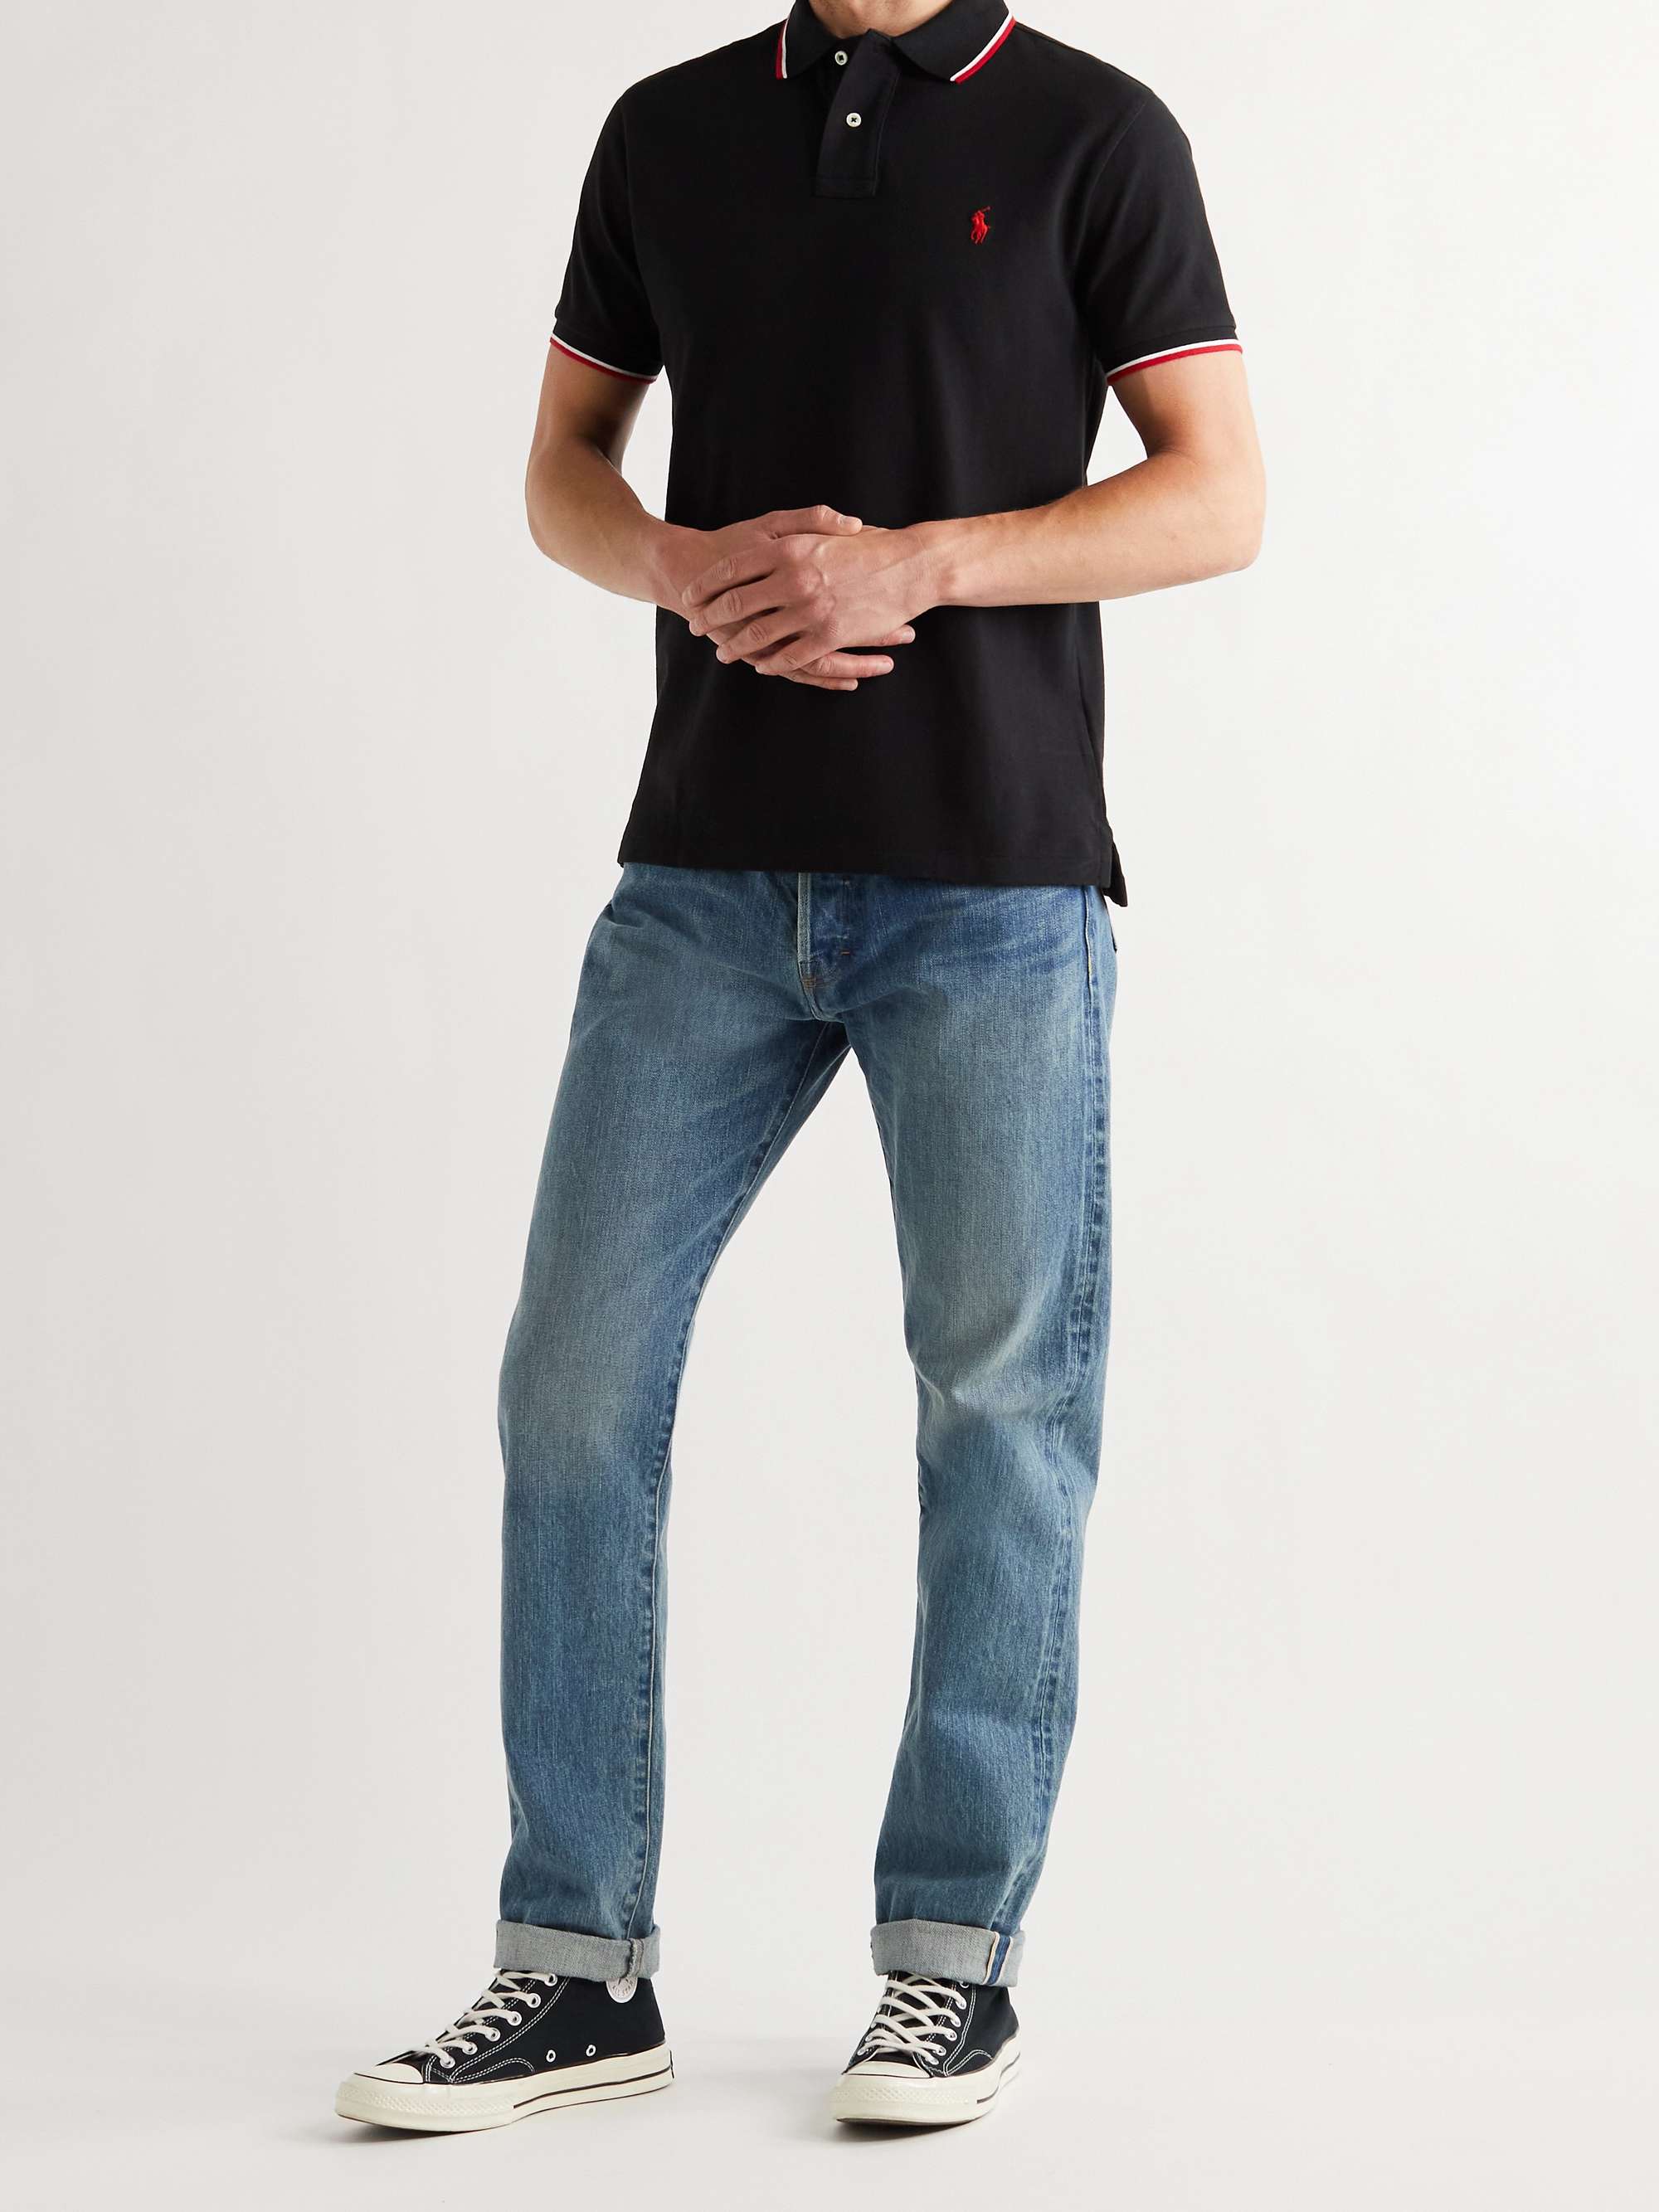 Black Slim-Fit Contrast-Tipped Cotton-Piqué Polo Shirt | POLO RALPH LAUREN  | MR PORTER